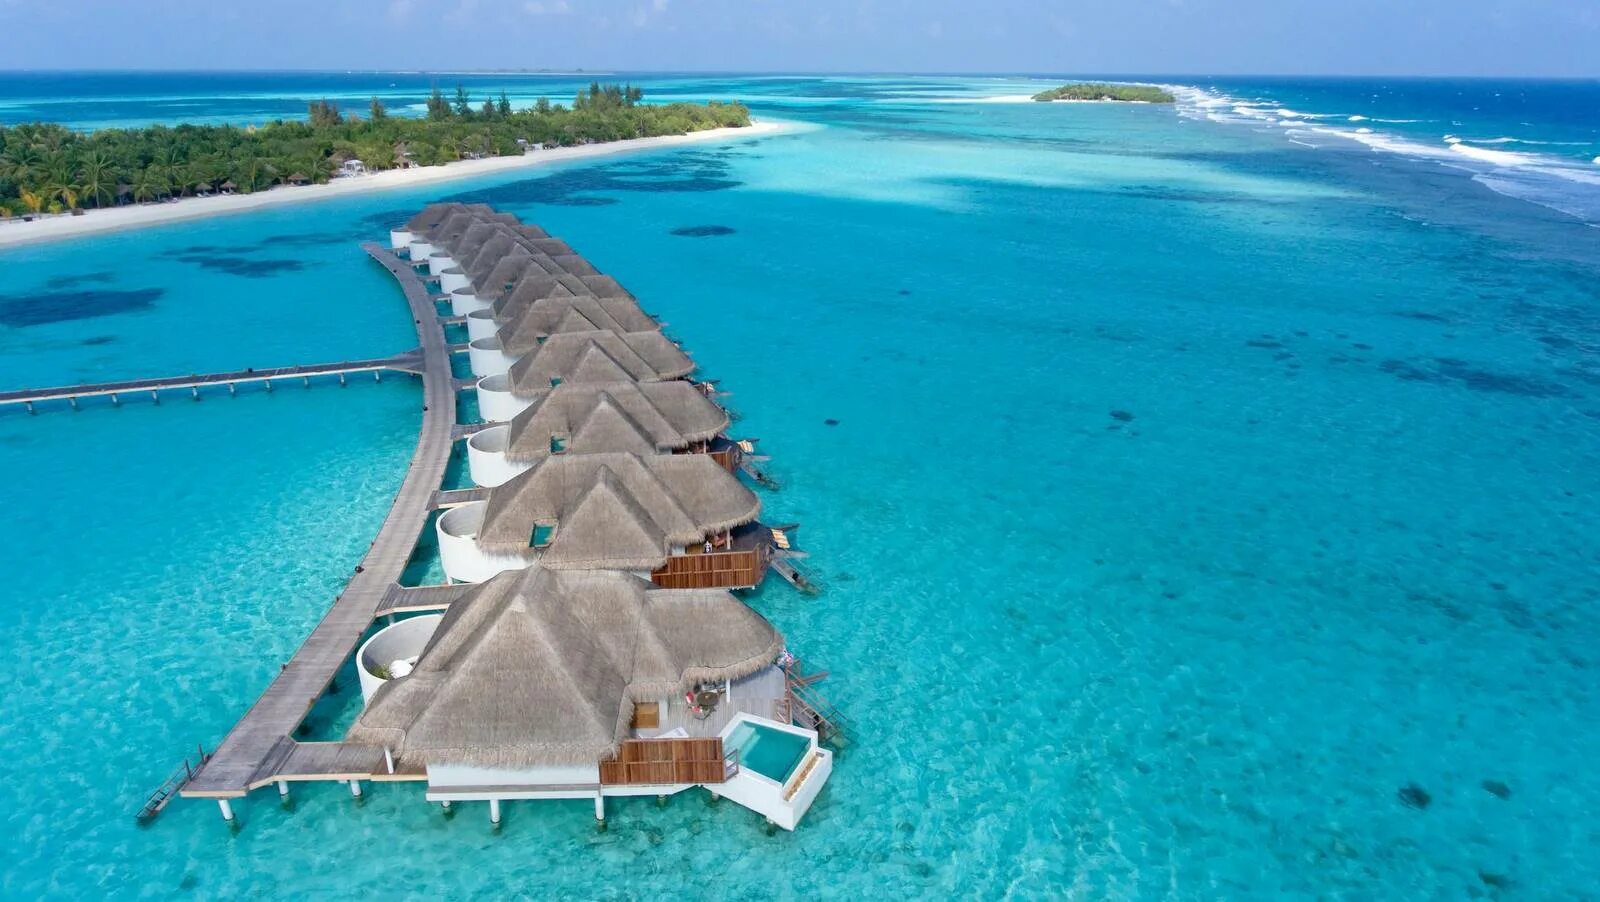 Остров Канухура Мальдивы. Канахура отель Мальдивы. Мальдивы Лавияни Атолл. Мале Мальдивы пляжи. Погода мале